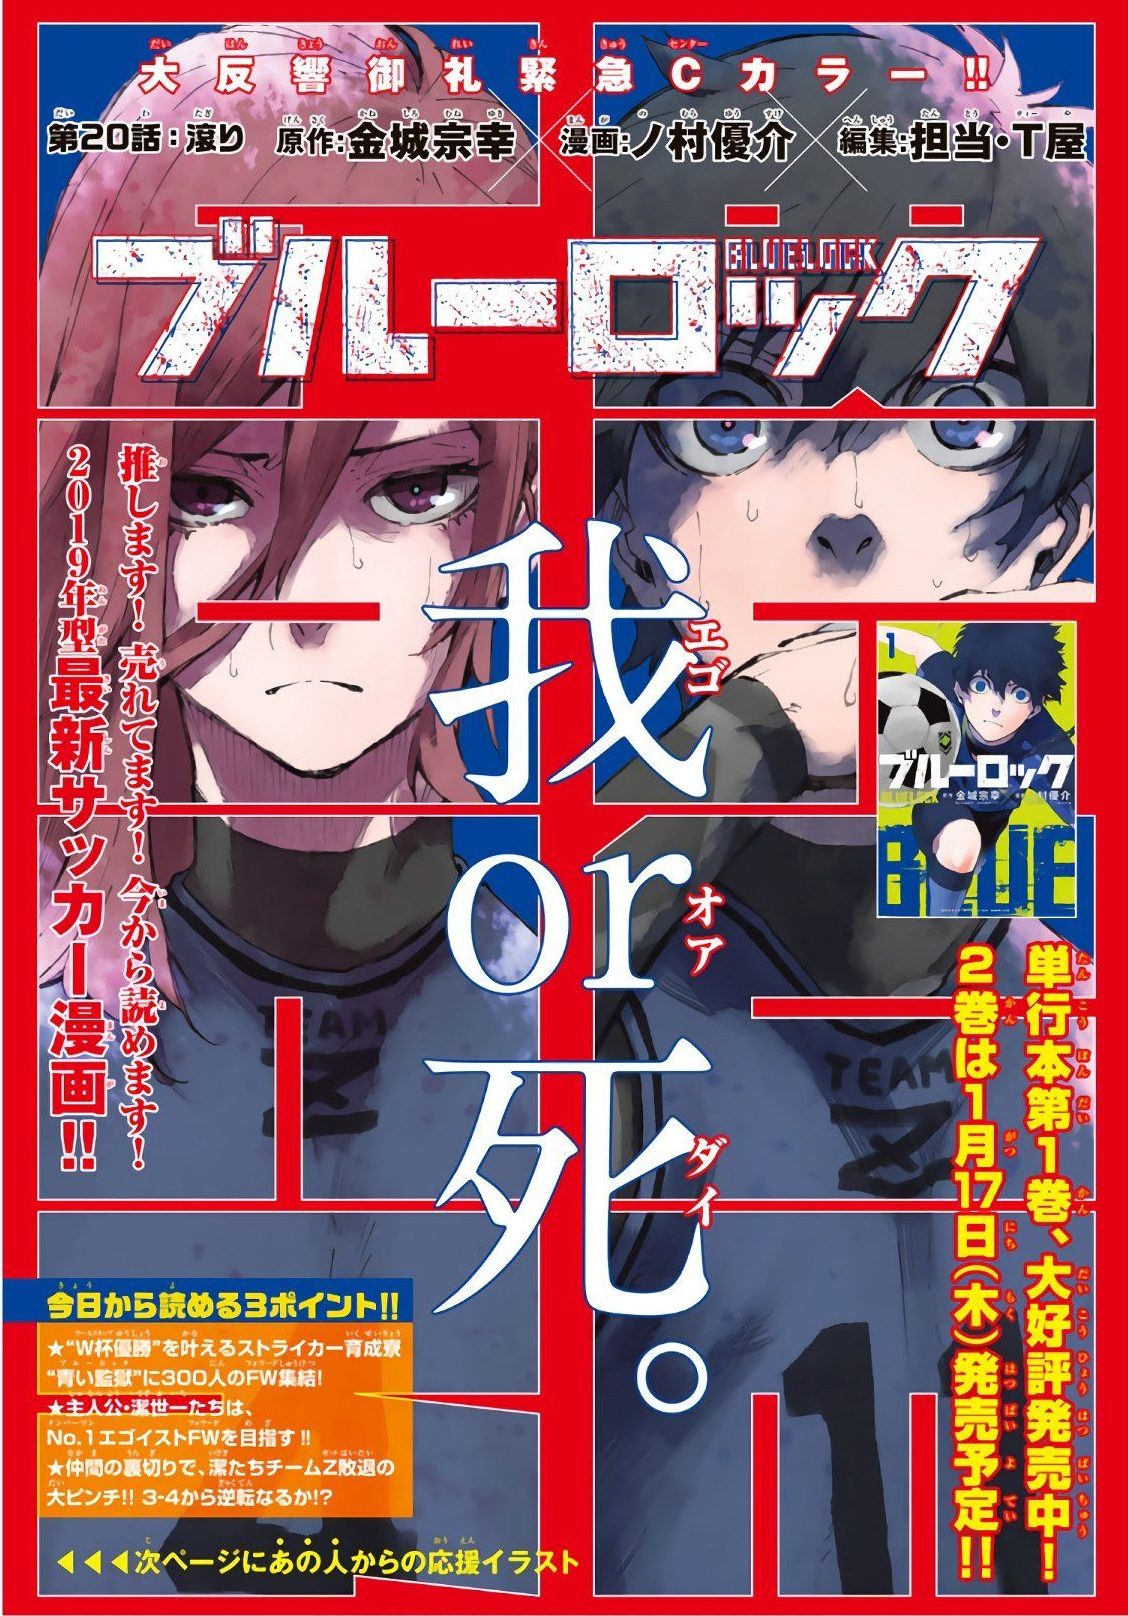 Blue Lock (Manga), Blue Lock Wiki, Fandom